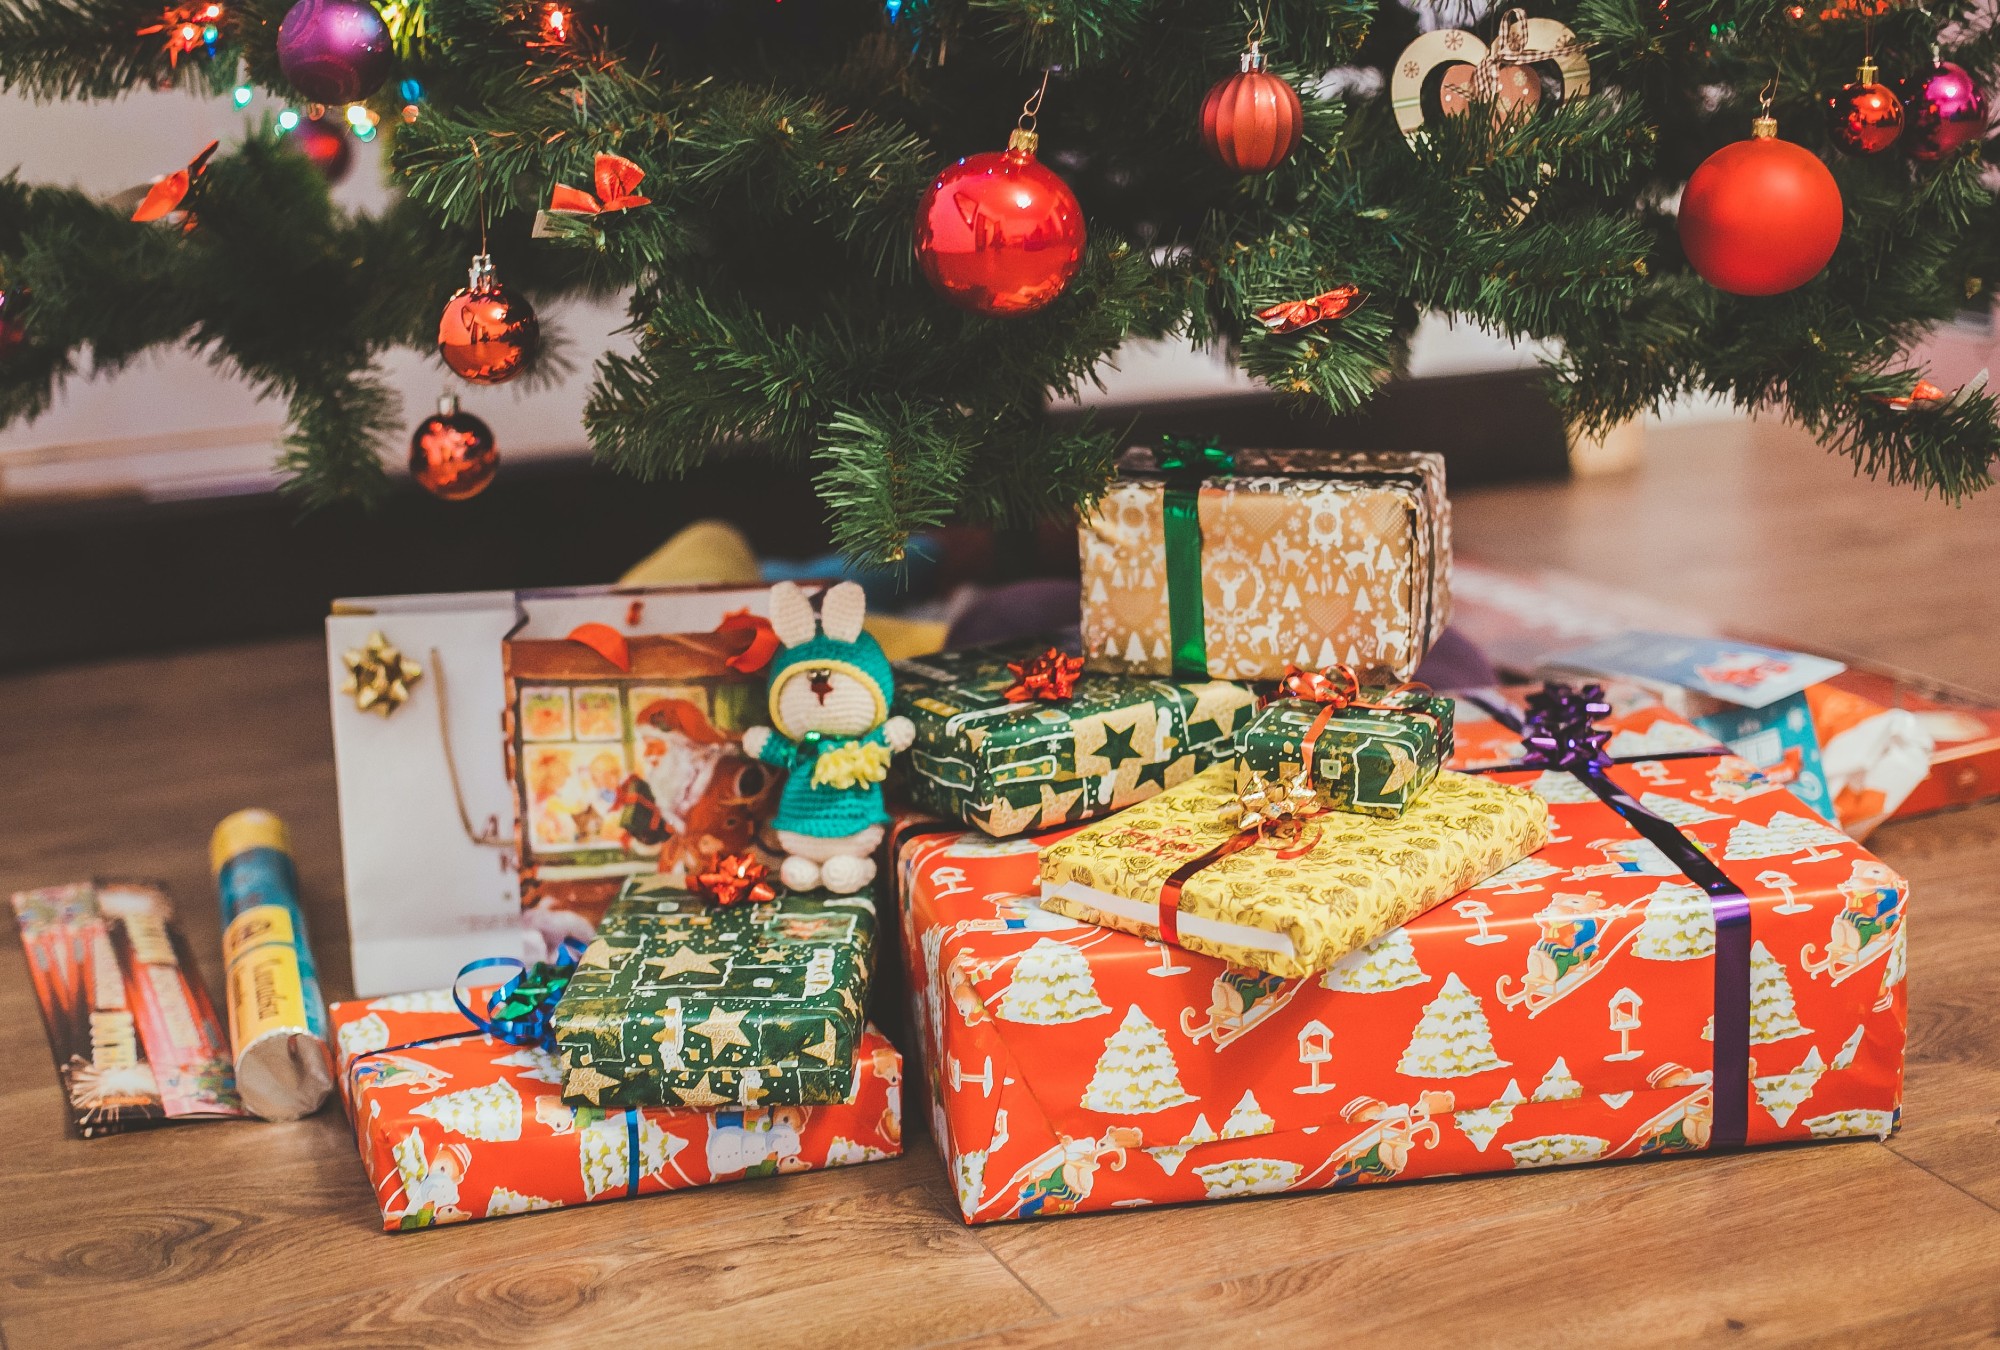 Estas son 6 grandes ideas de regalos de Navidad que puedes dar o recibir -  Emprendedor